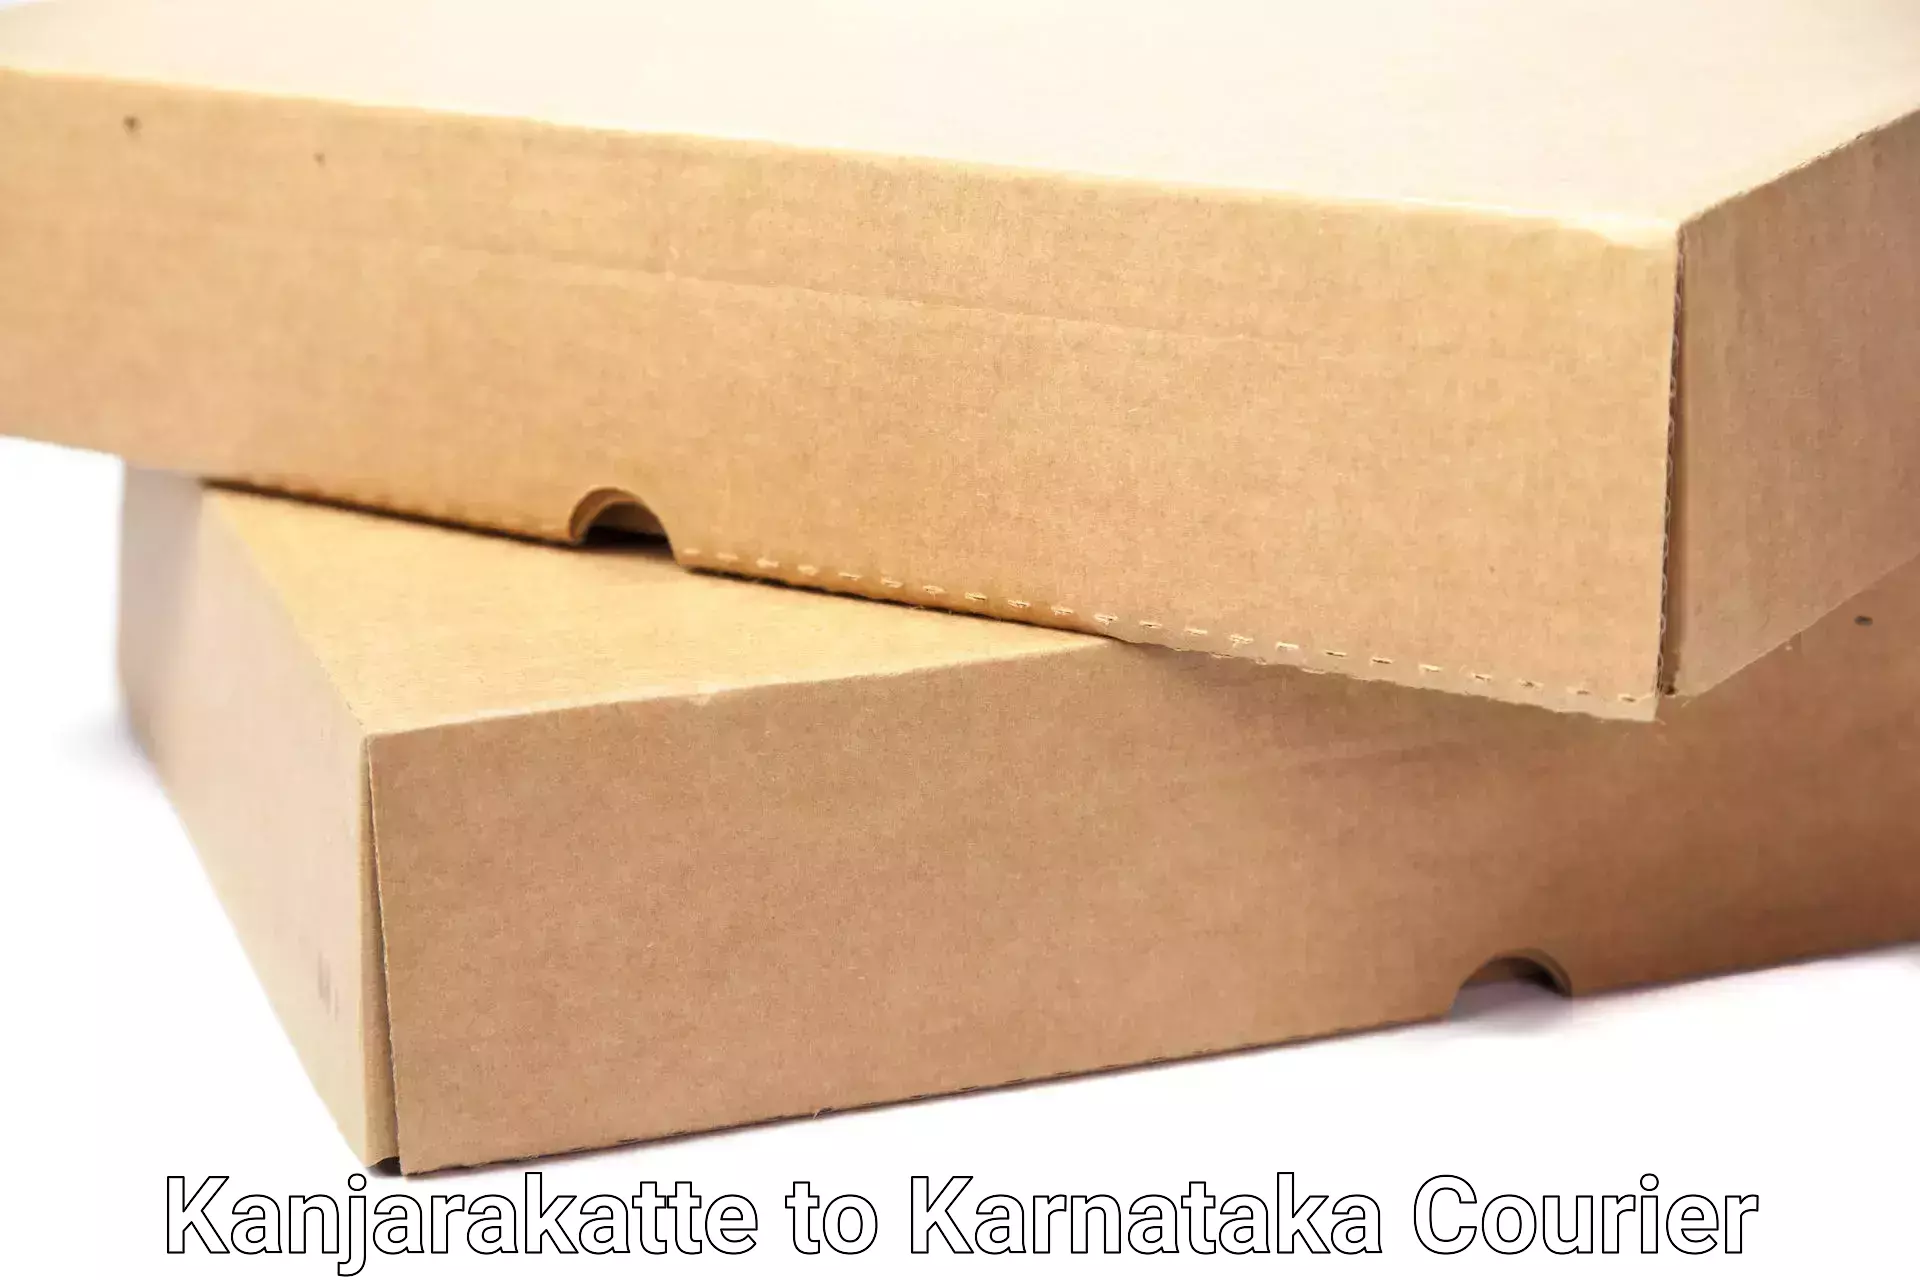 Reliable goods transport Kanjarakatte to Karnataka